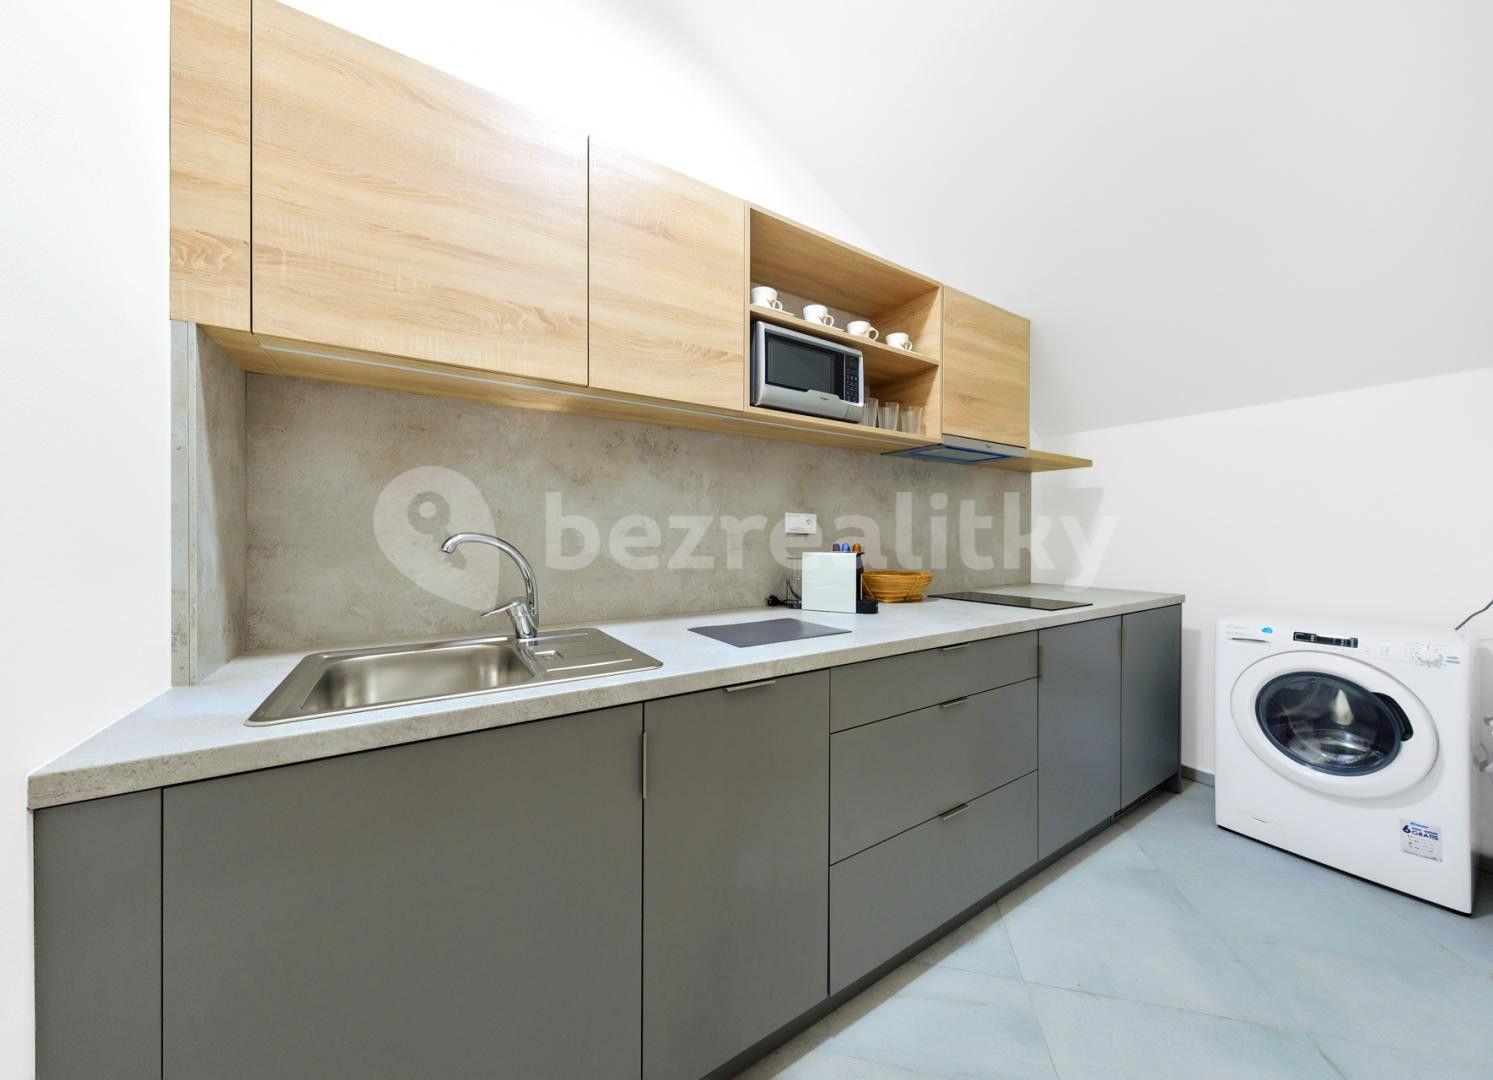 2 bedroom flat to rent, 50 m², Strakonická, Prague, Prague